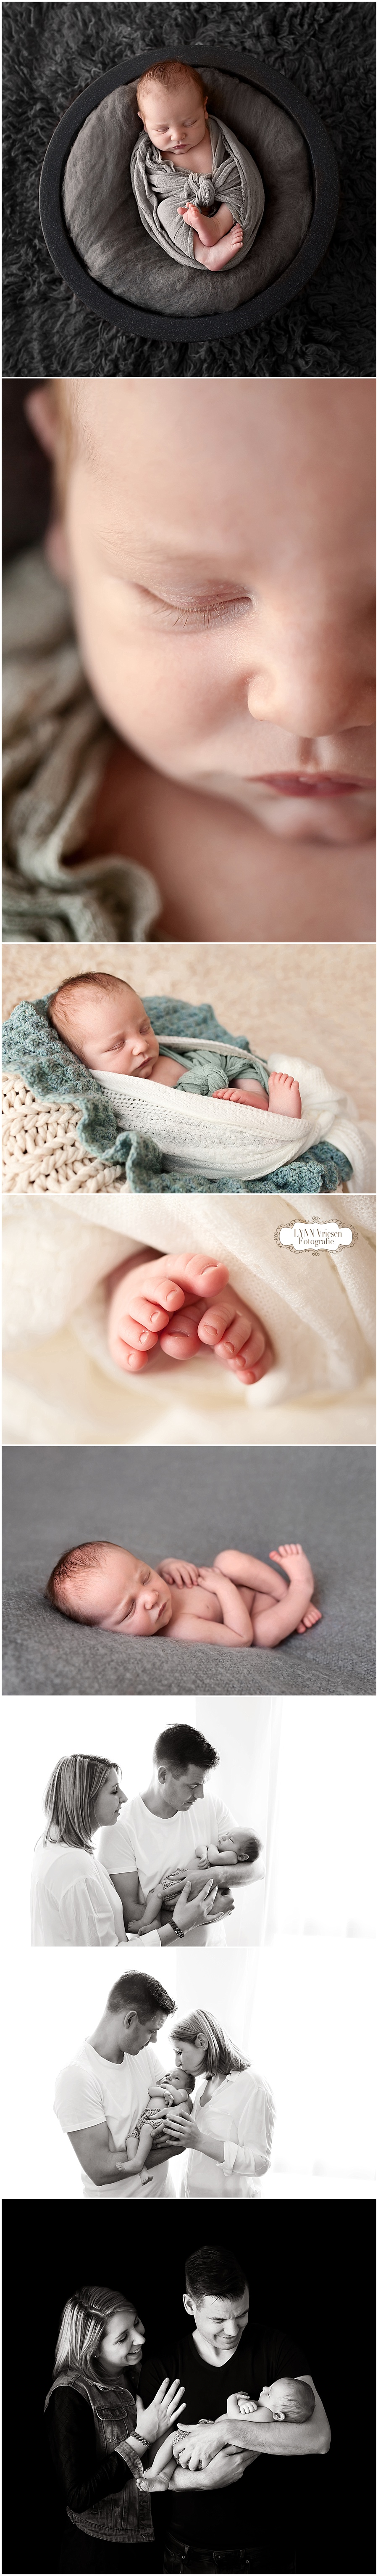 Ruuben 12 dagen jong - Newborn fotografie Westervoort